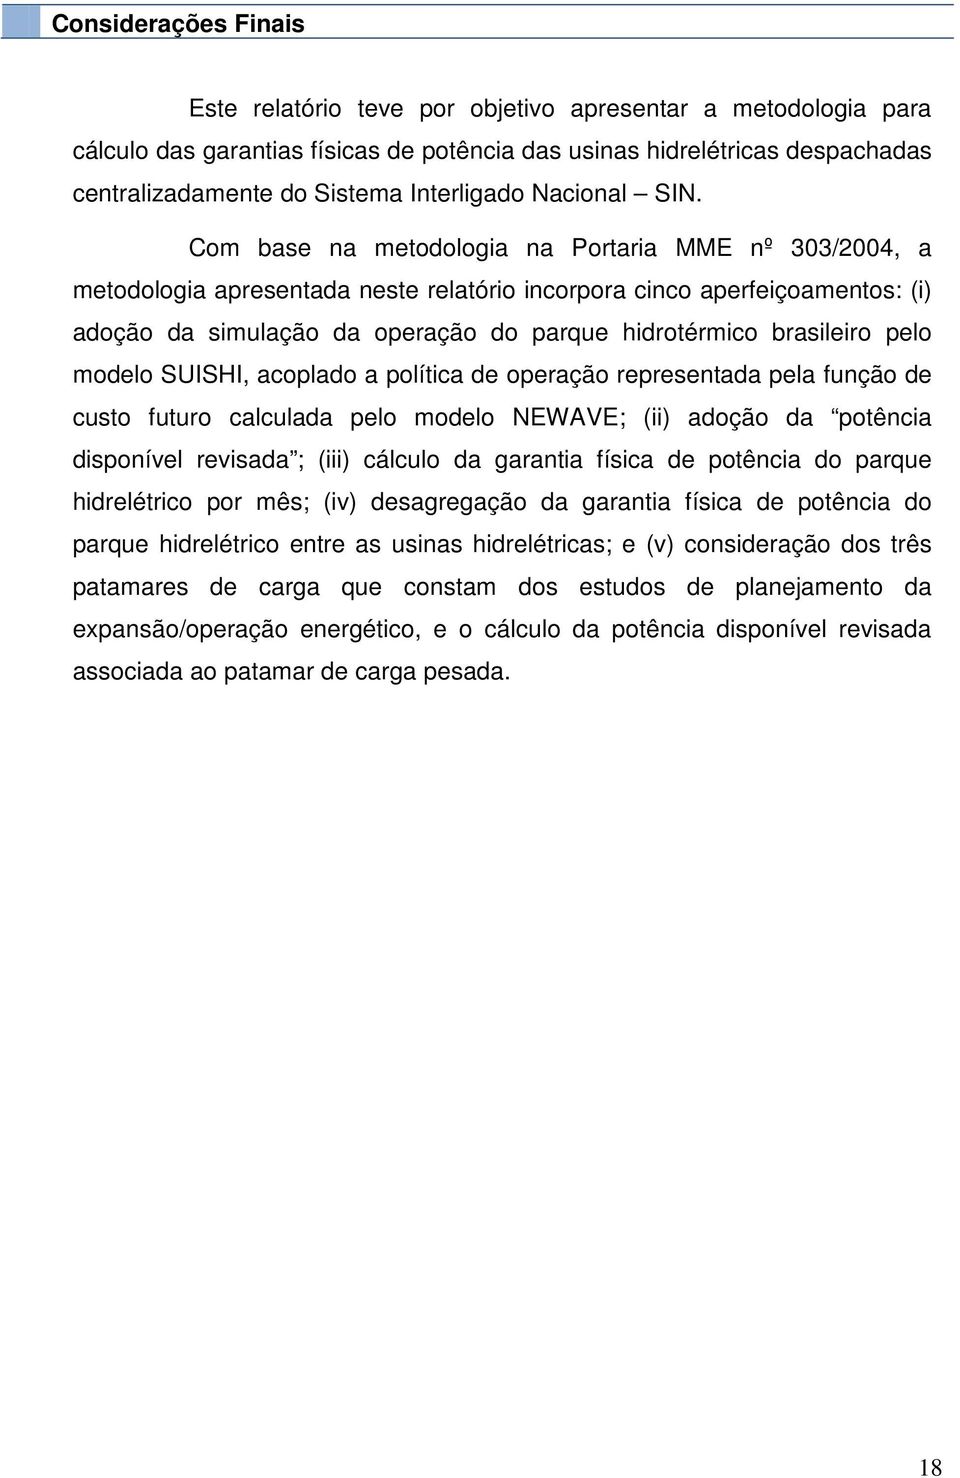 Com base na metodologia na Portaria MME nº 303/2004, a metodologia apresentada neste relatório incorpora cinco aperfeiçoamentos: (i) adoção da simulação da operação do parque hidrotérmico brasileiro